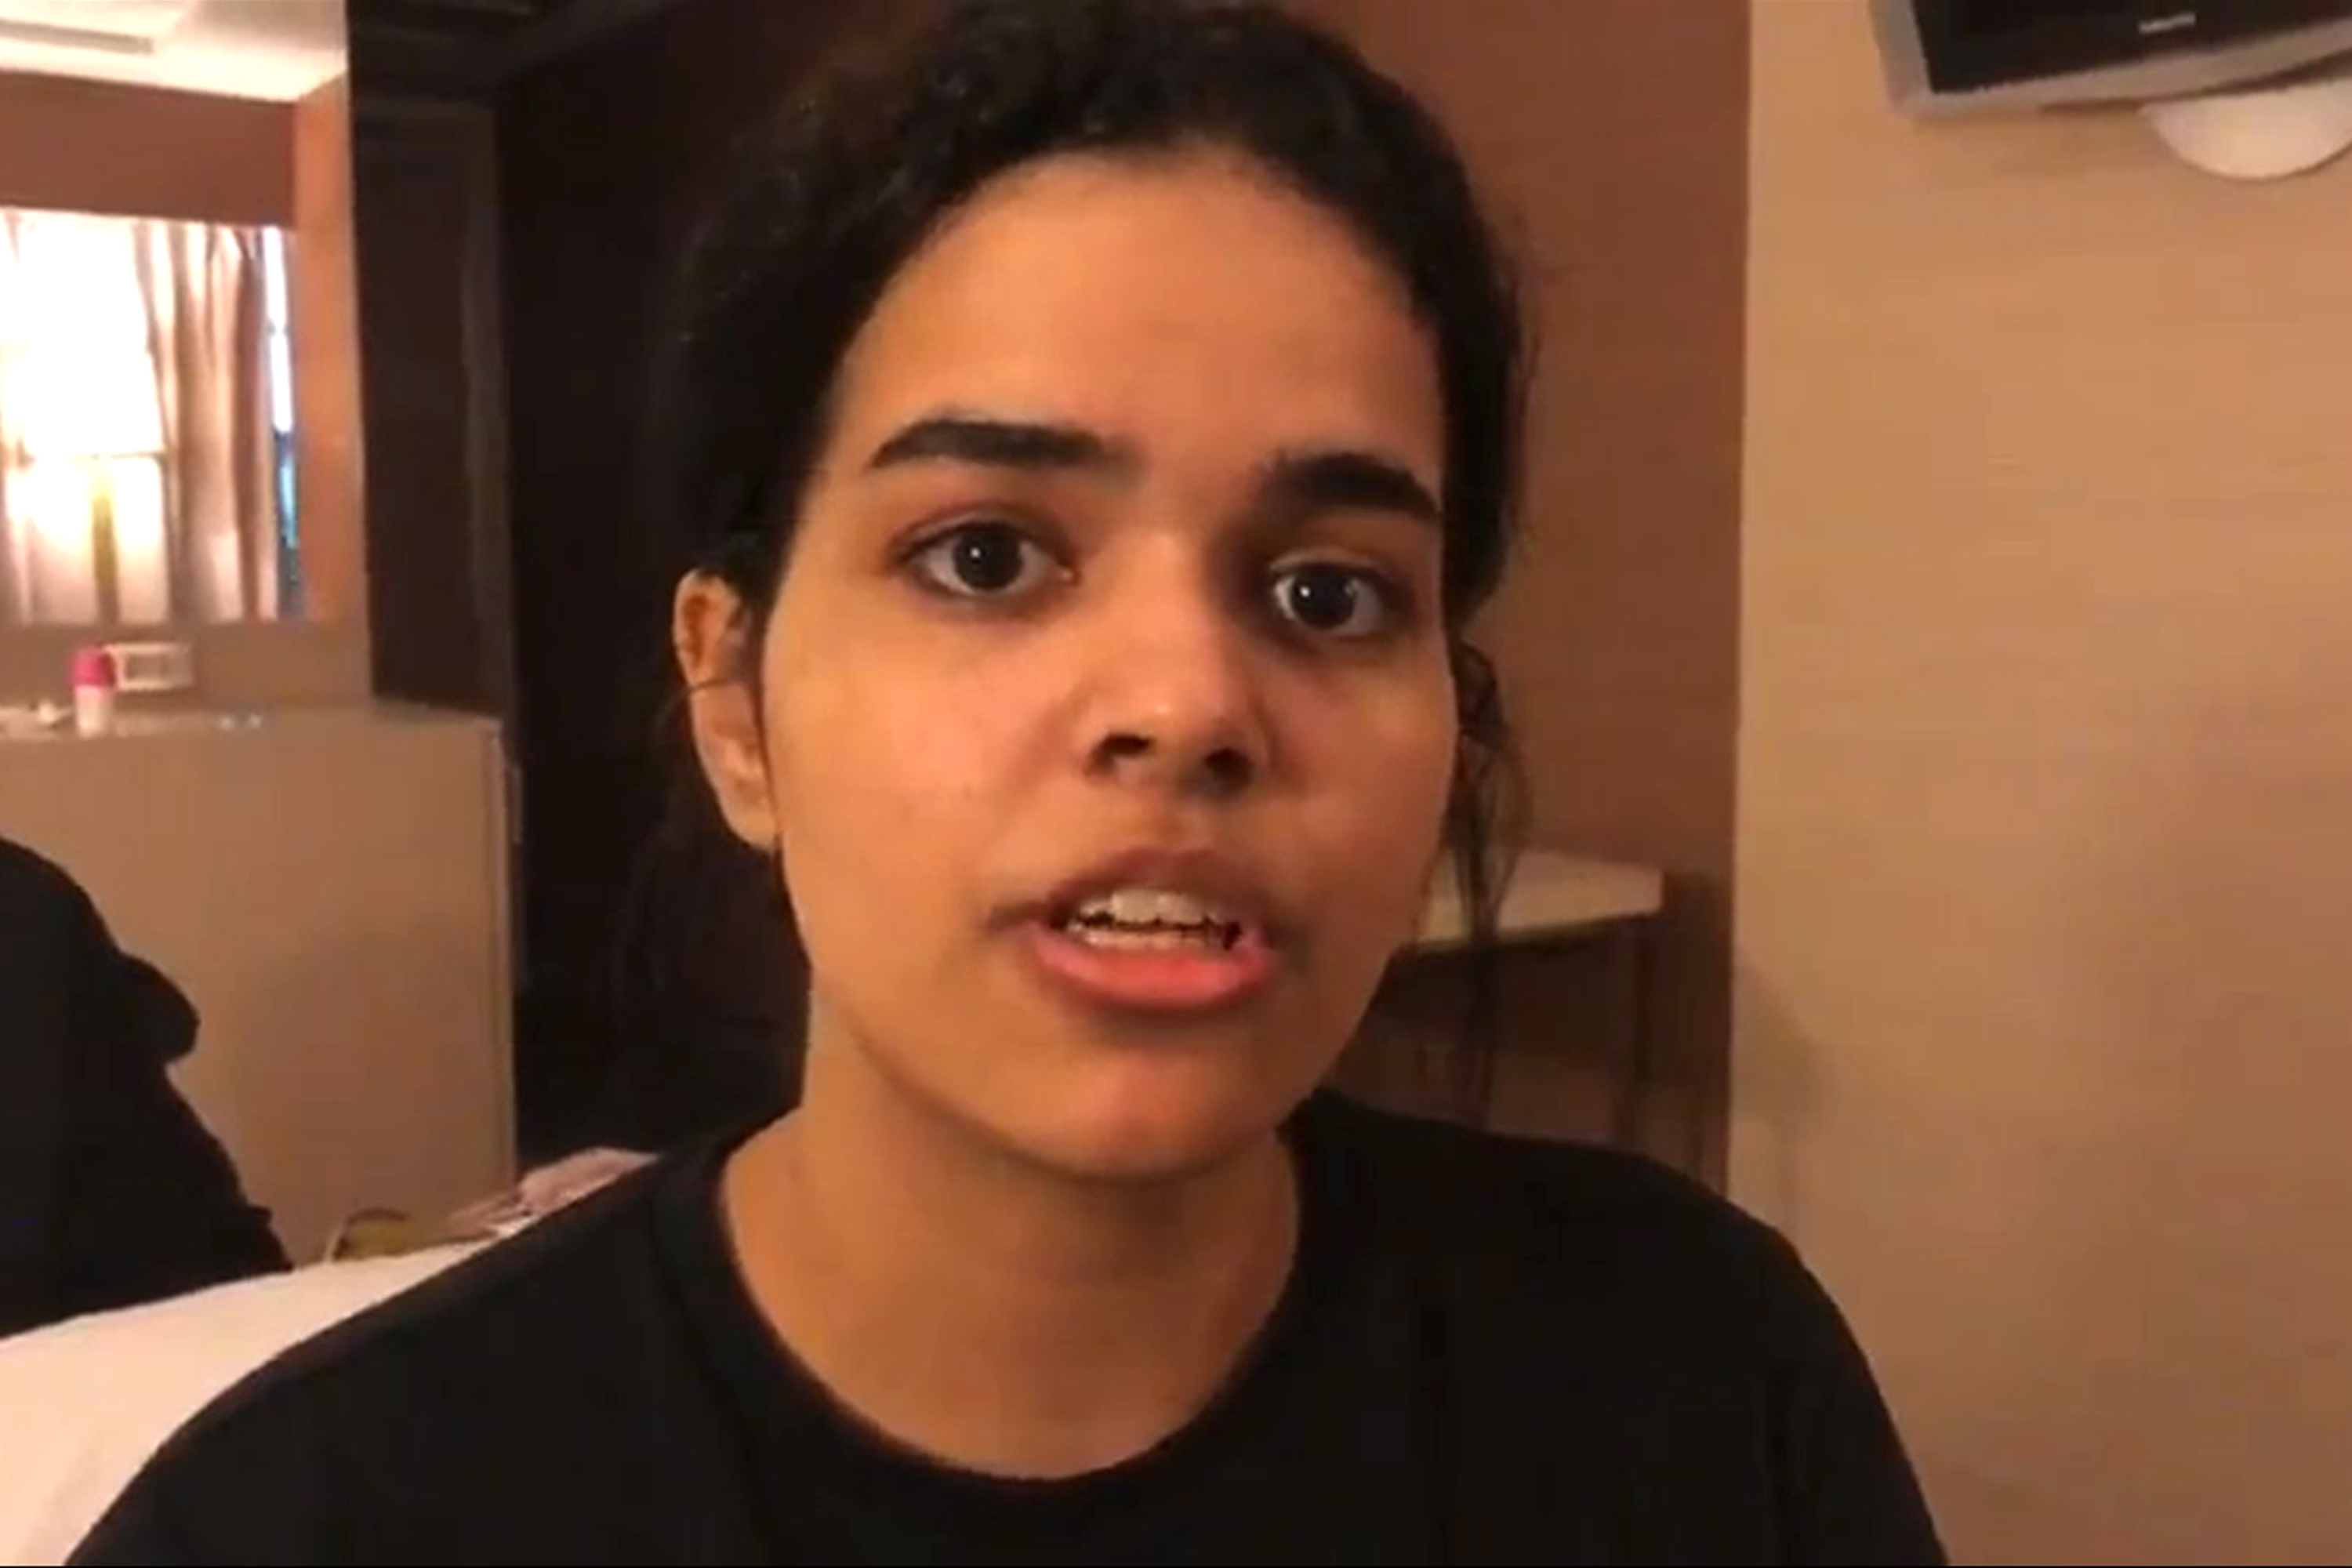 Ausztrália befogadhatja a családja elől menekülő szaúdi kamaszlányt